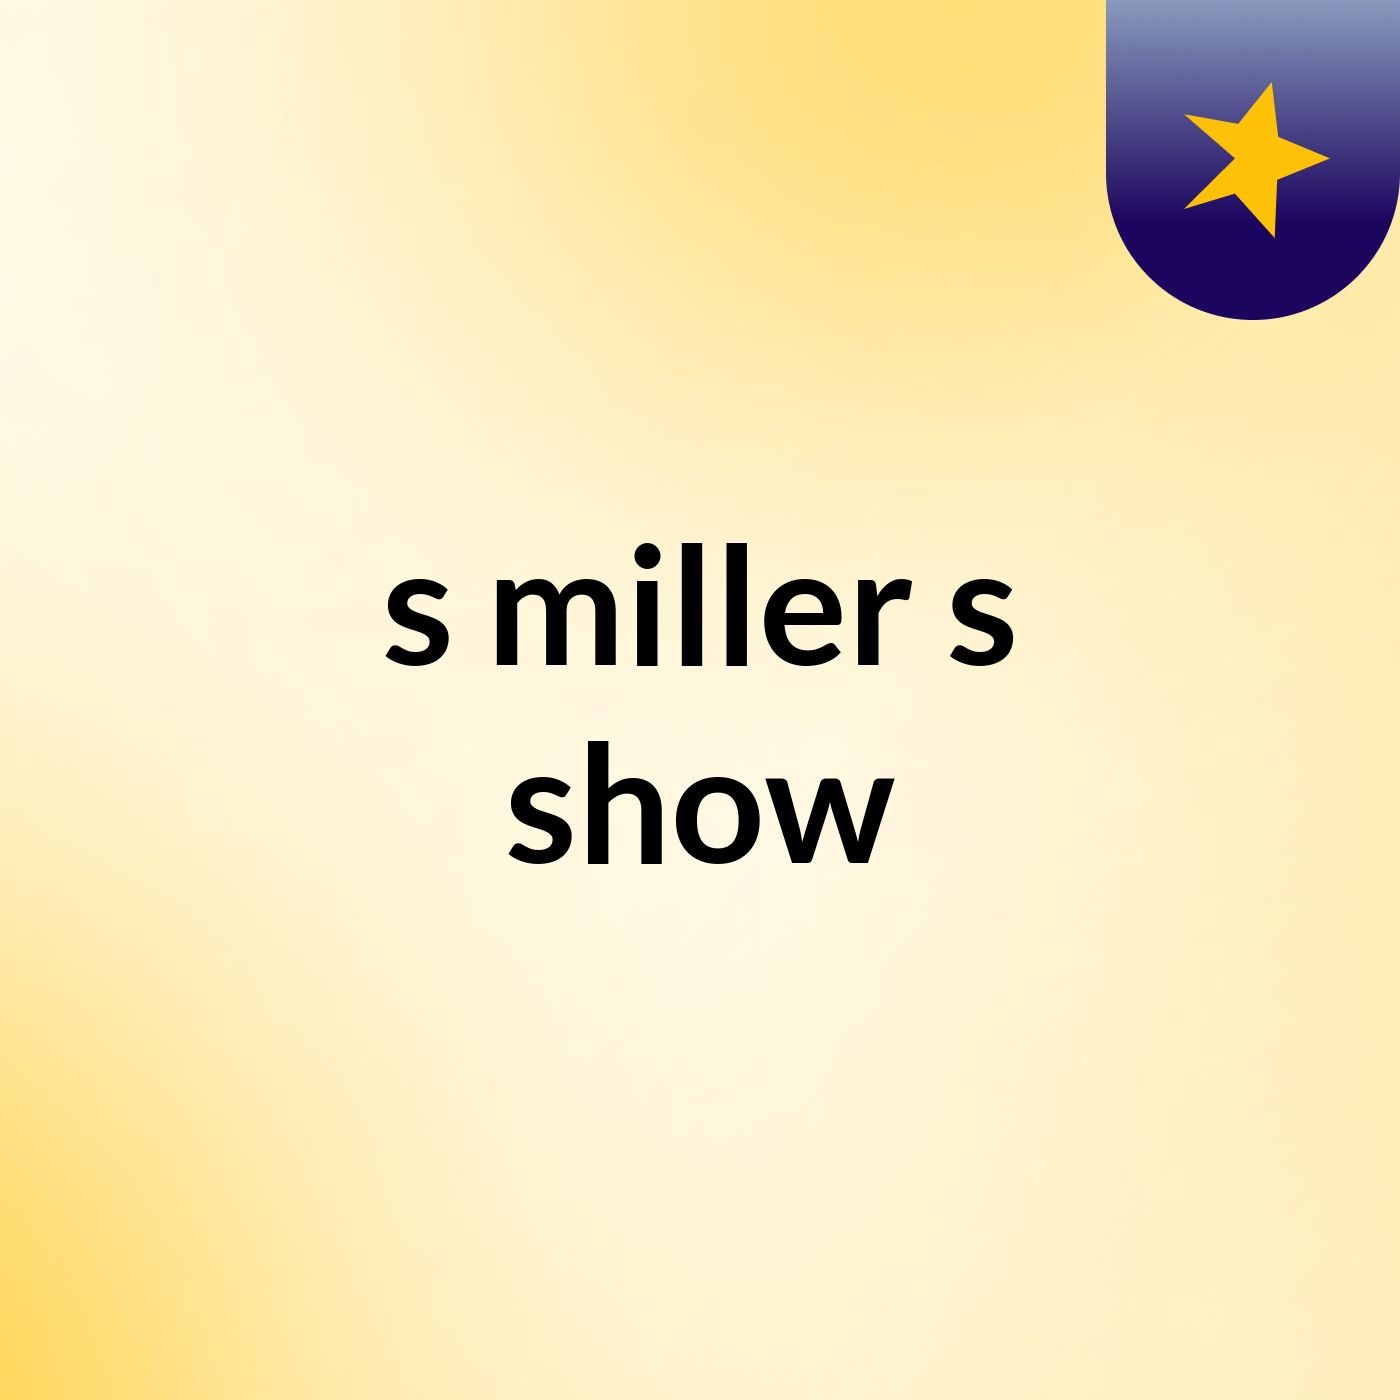 s miller's show